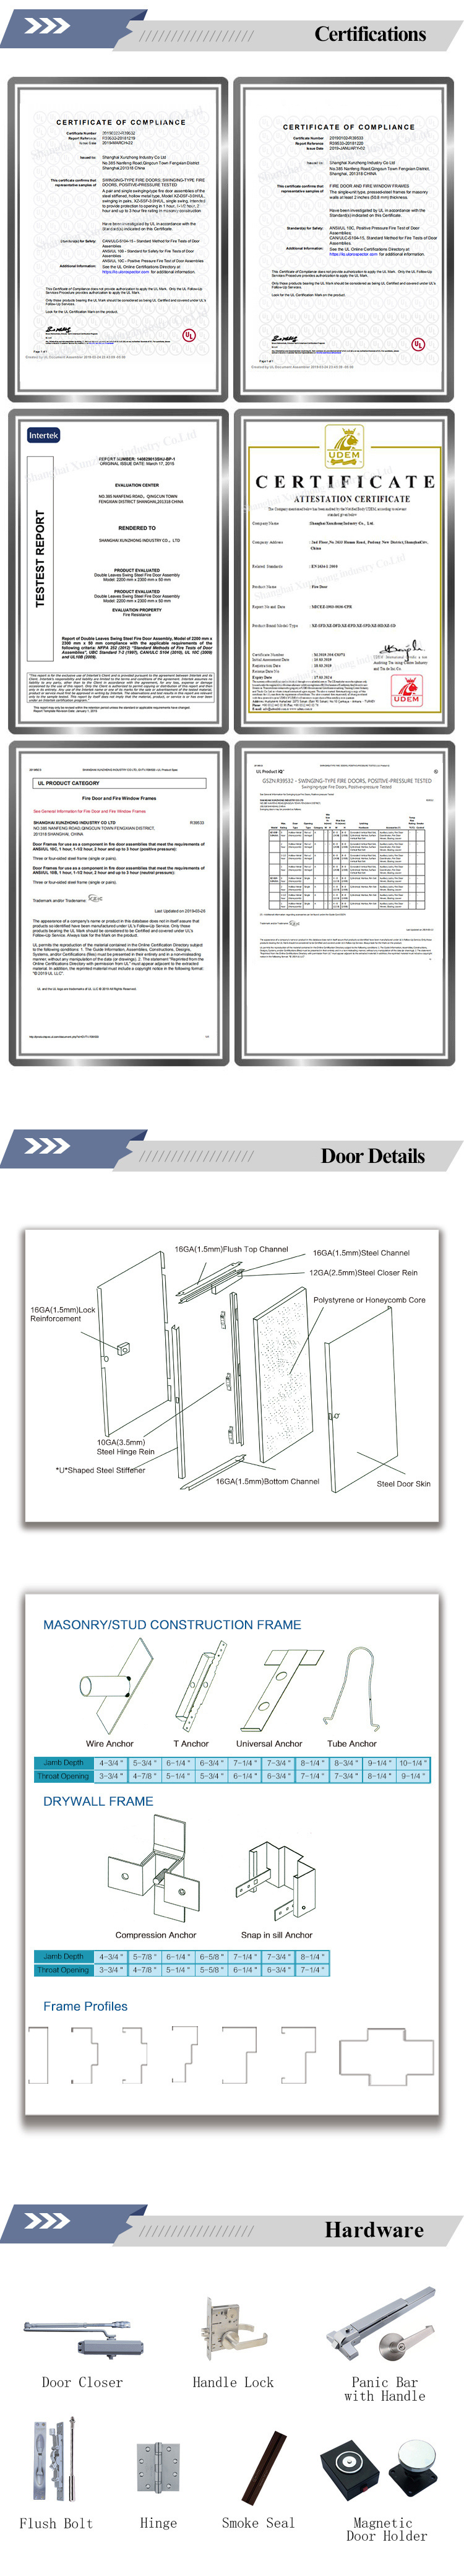 Xzic Good Fire Resistant UL Fire Rated Steel Door